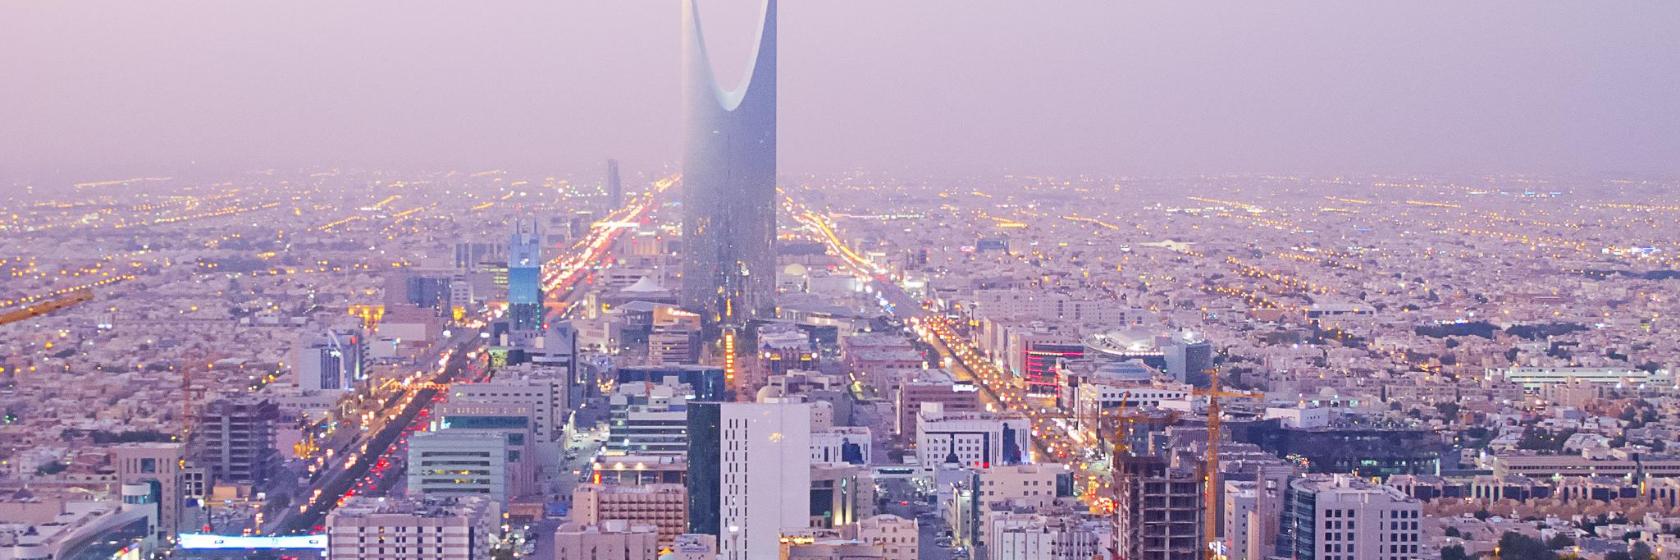 أفضل 10 فنادق في المملكة العربية السعودية - أماكن للإقامة في المملكة  العربية السعودية